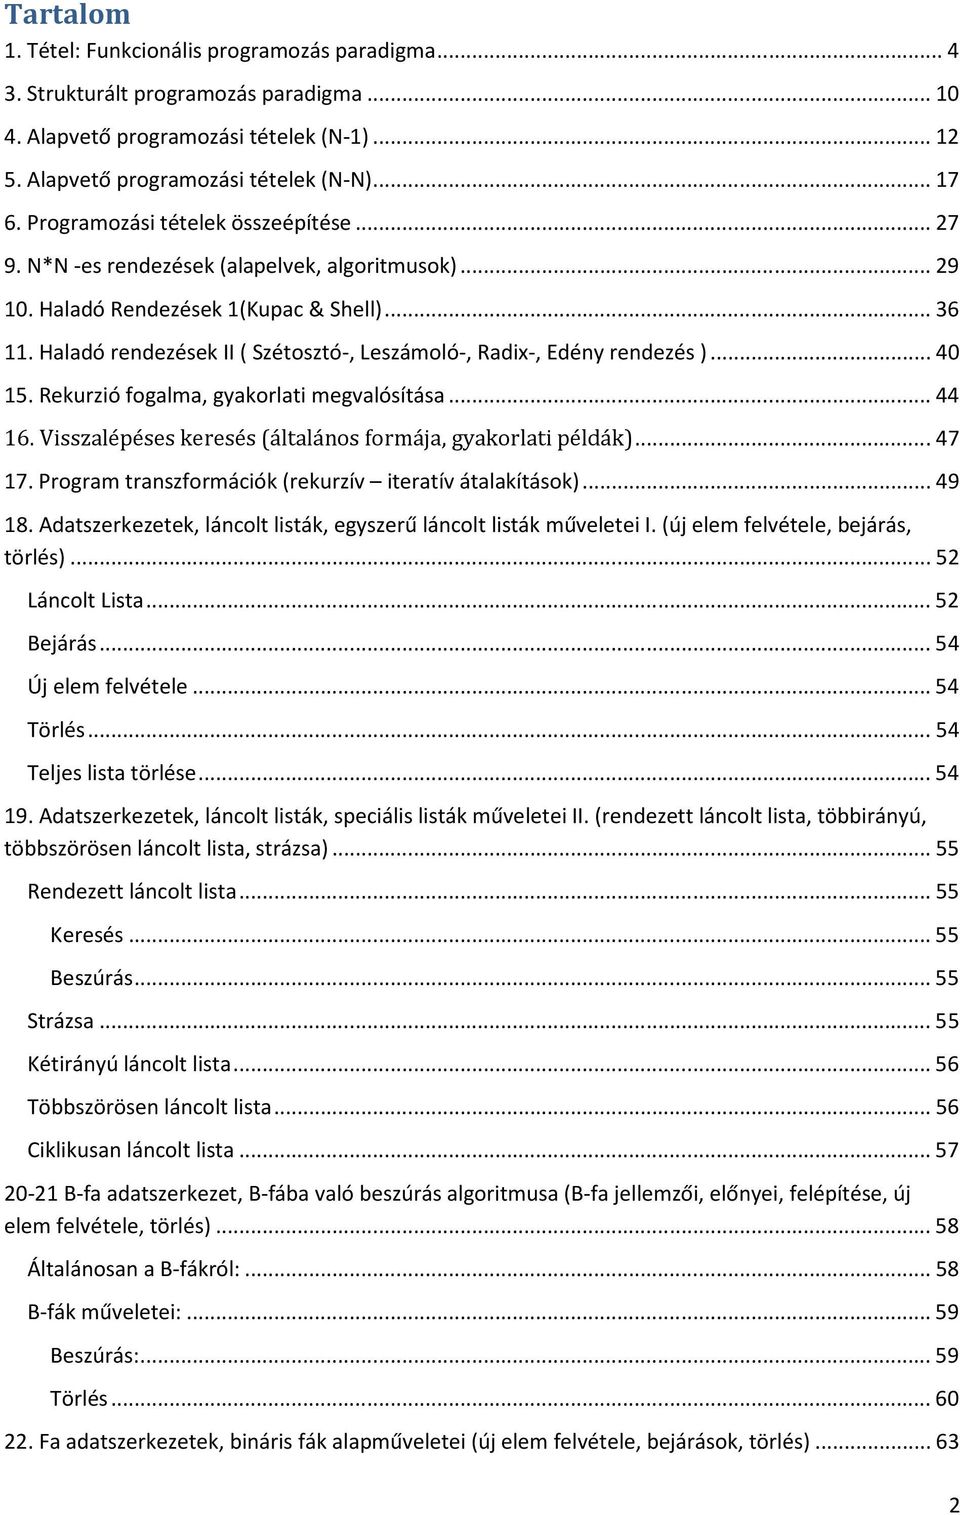 23. Fa adatszerkezetek, piros-fekete fa adatszerkezet (forgatások, új elem  felvétele, törlés)(shagreen) - PDF Free Download